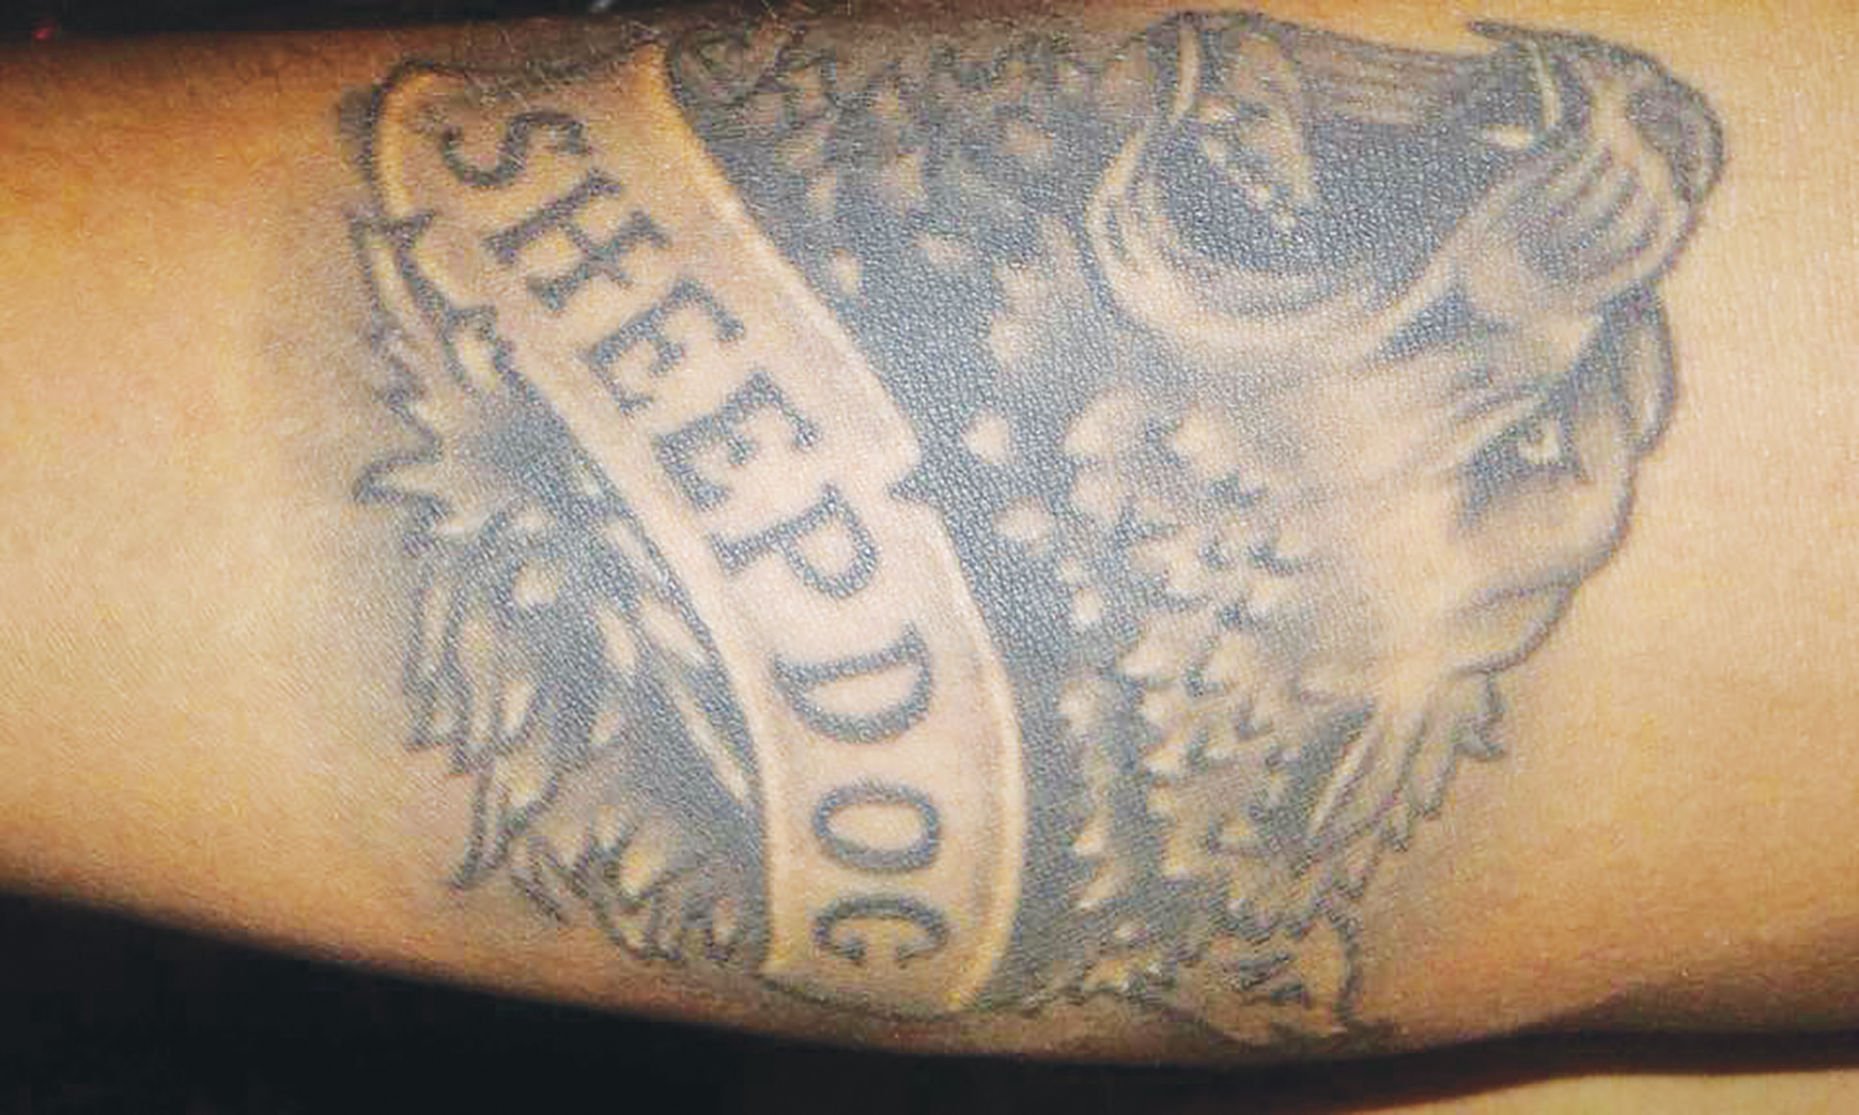 8 Best sheepdog tattoo ideas  wolf tattoos sleeve tattoos cool tattoos